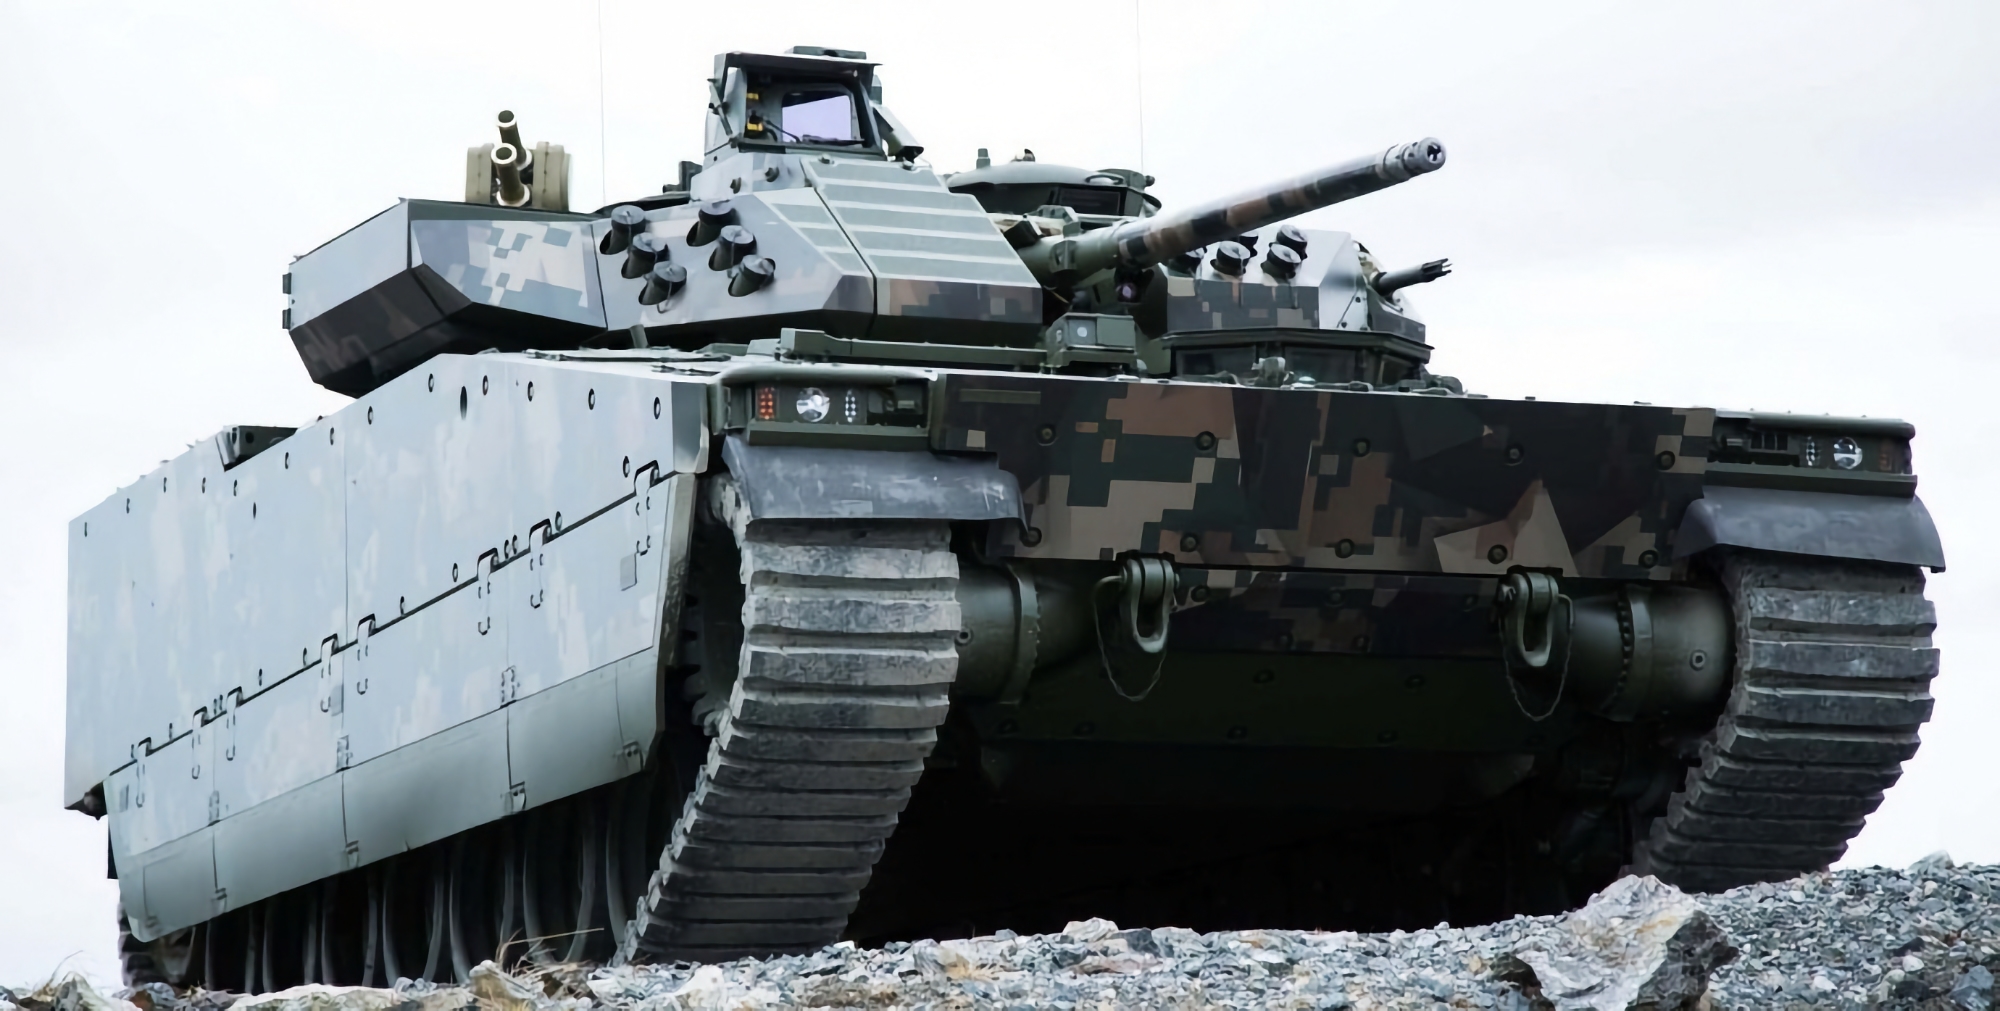 Danmark och Sverige överför ytterligare en omgång CV90 infanteristridsfordon till Ukraina